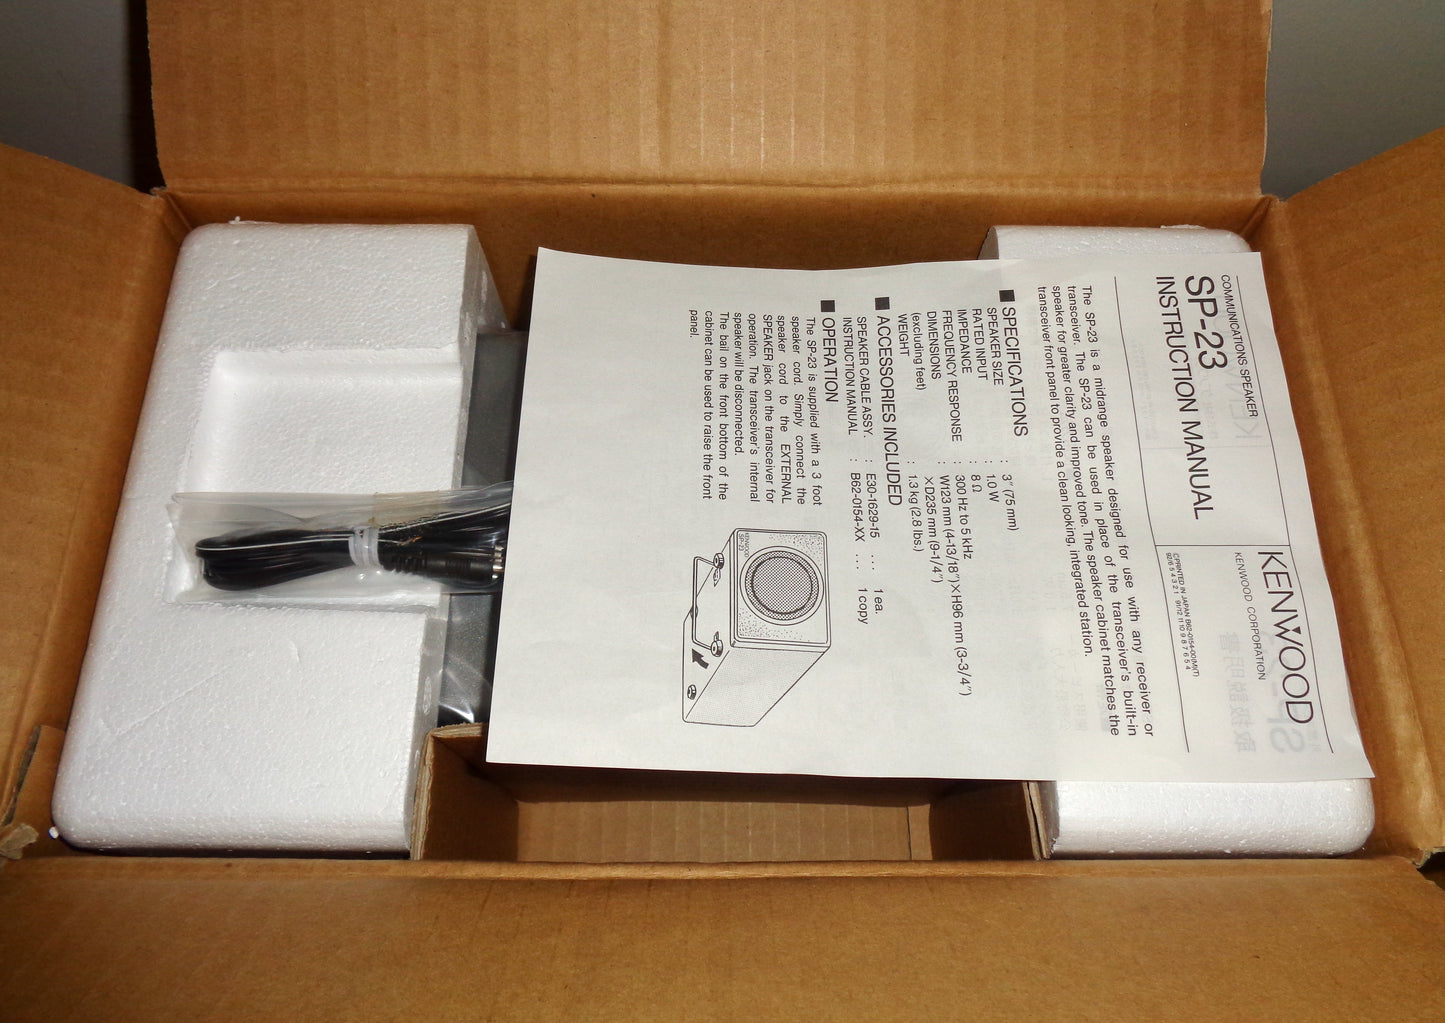 Kenwood SP23 Communications Speaker In Its Original Packaging